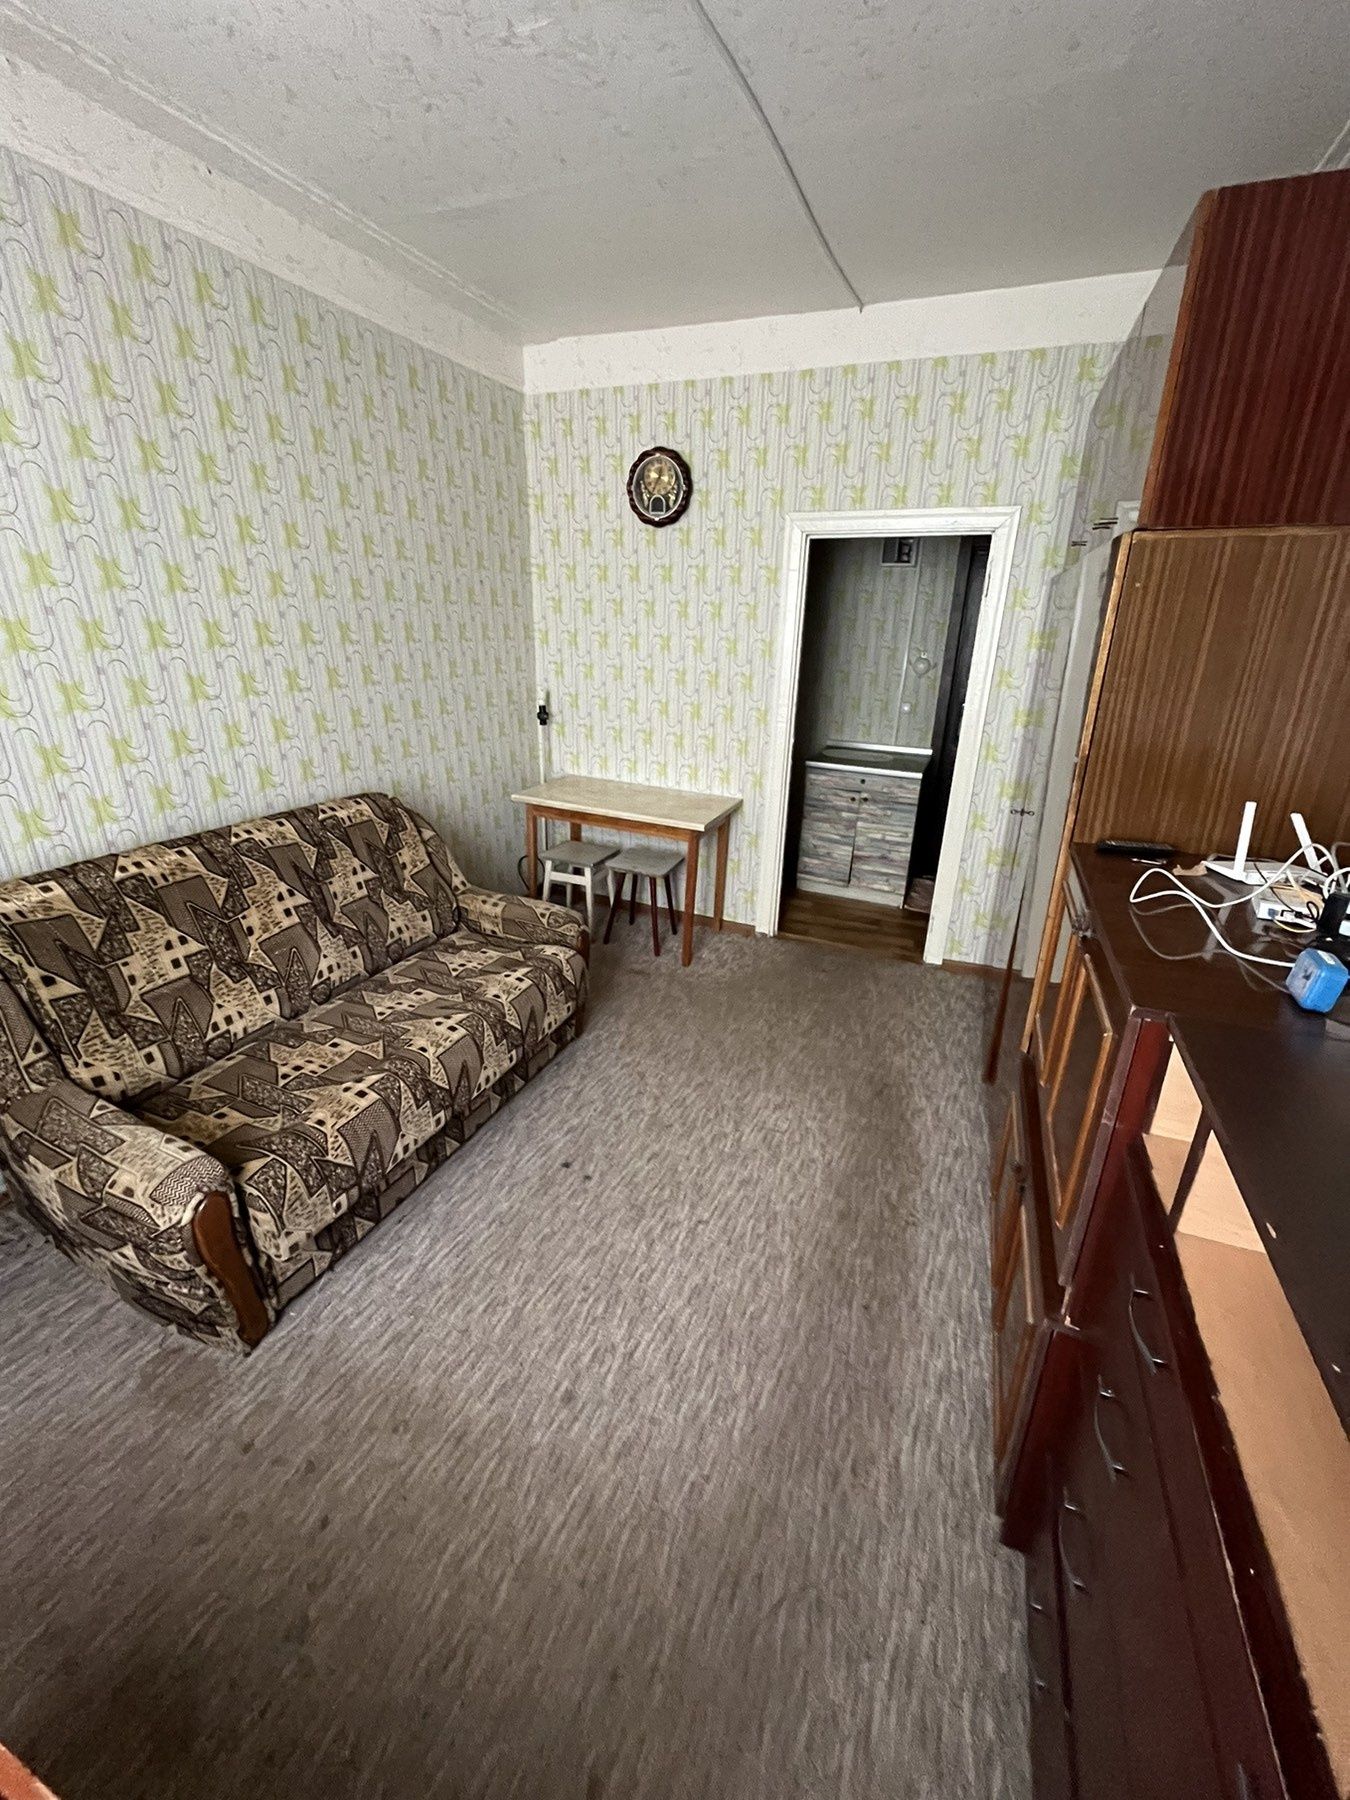 Сдам комнату в общежитии ж/м Приднепровск